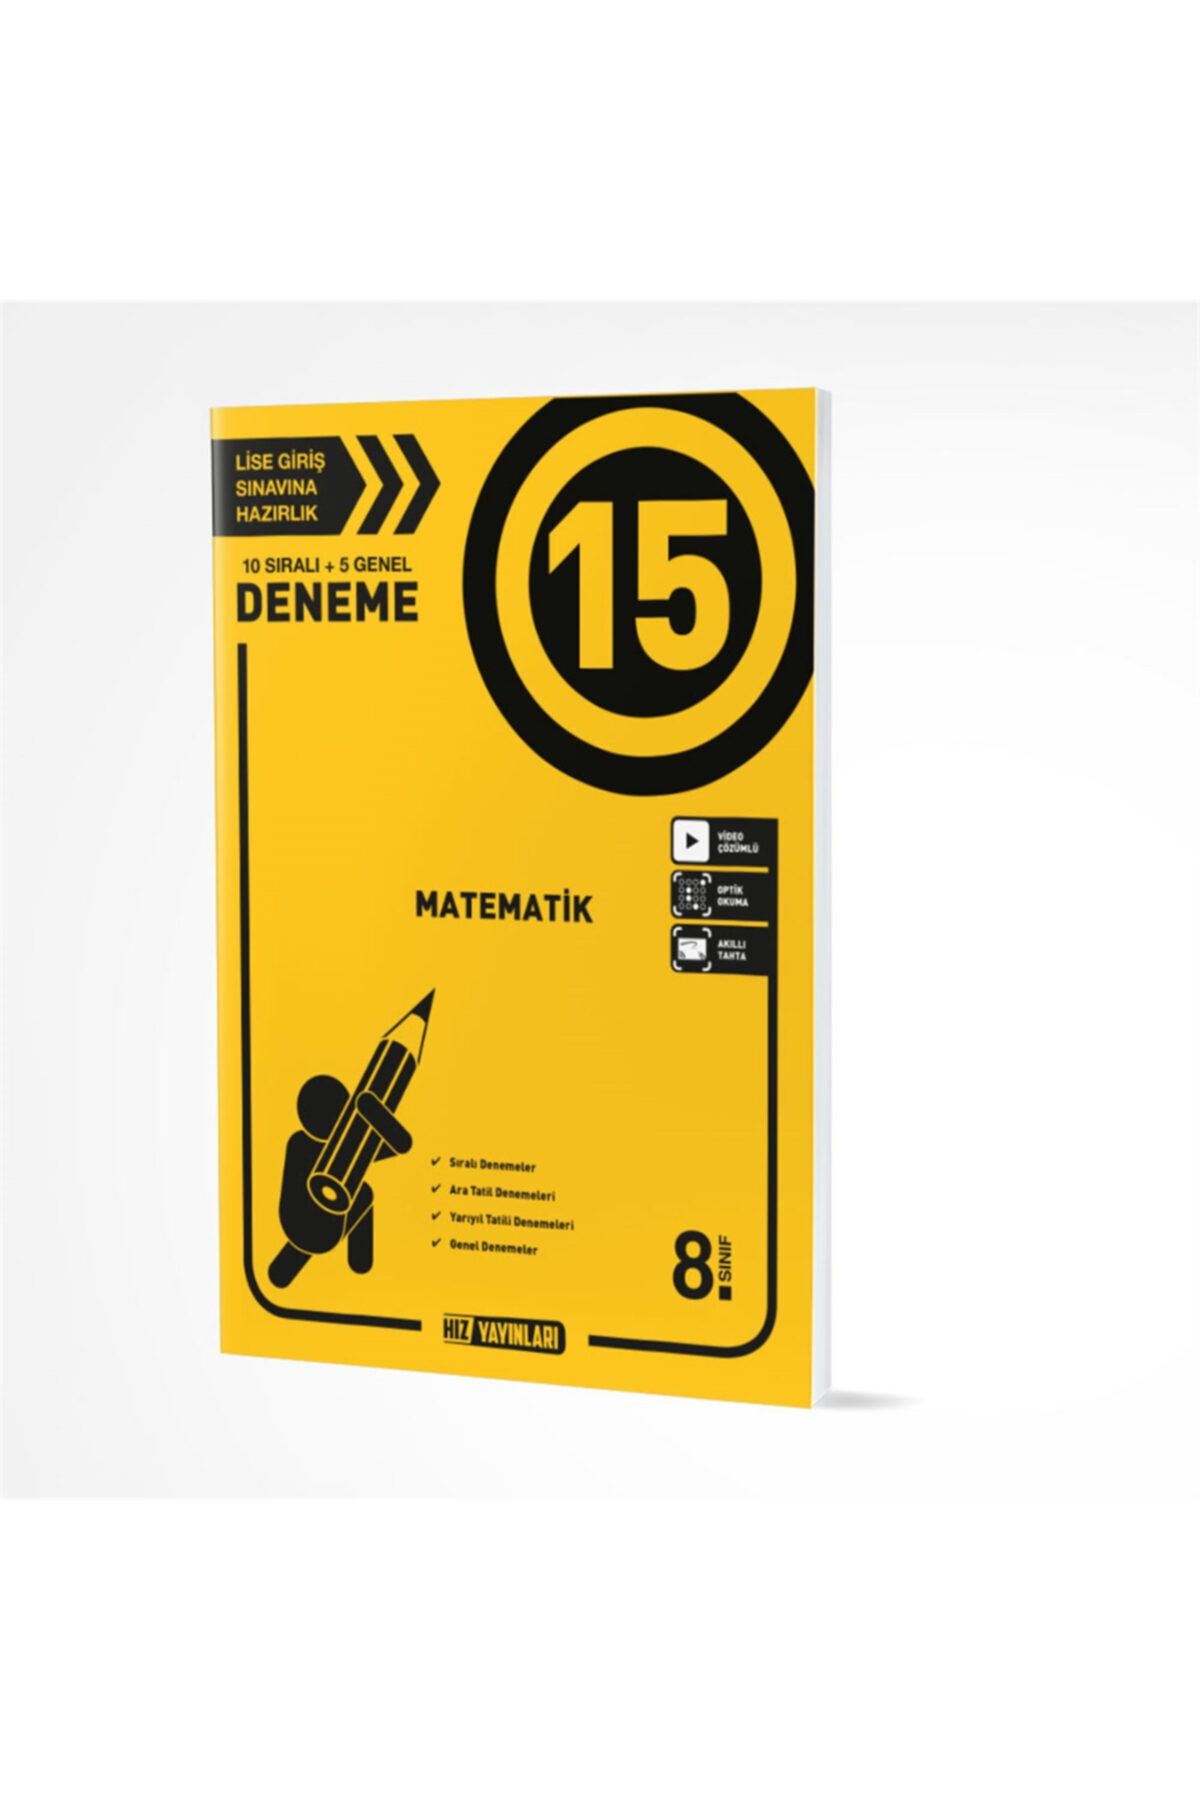 Hız Yayınları 8. Sınıf Matematik 15 Li Deneme